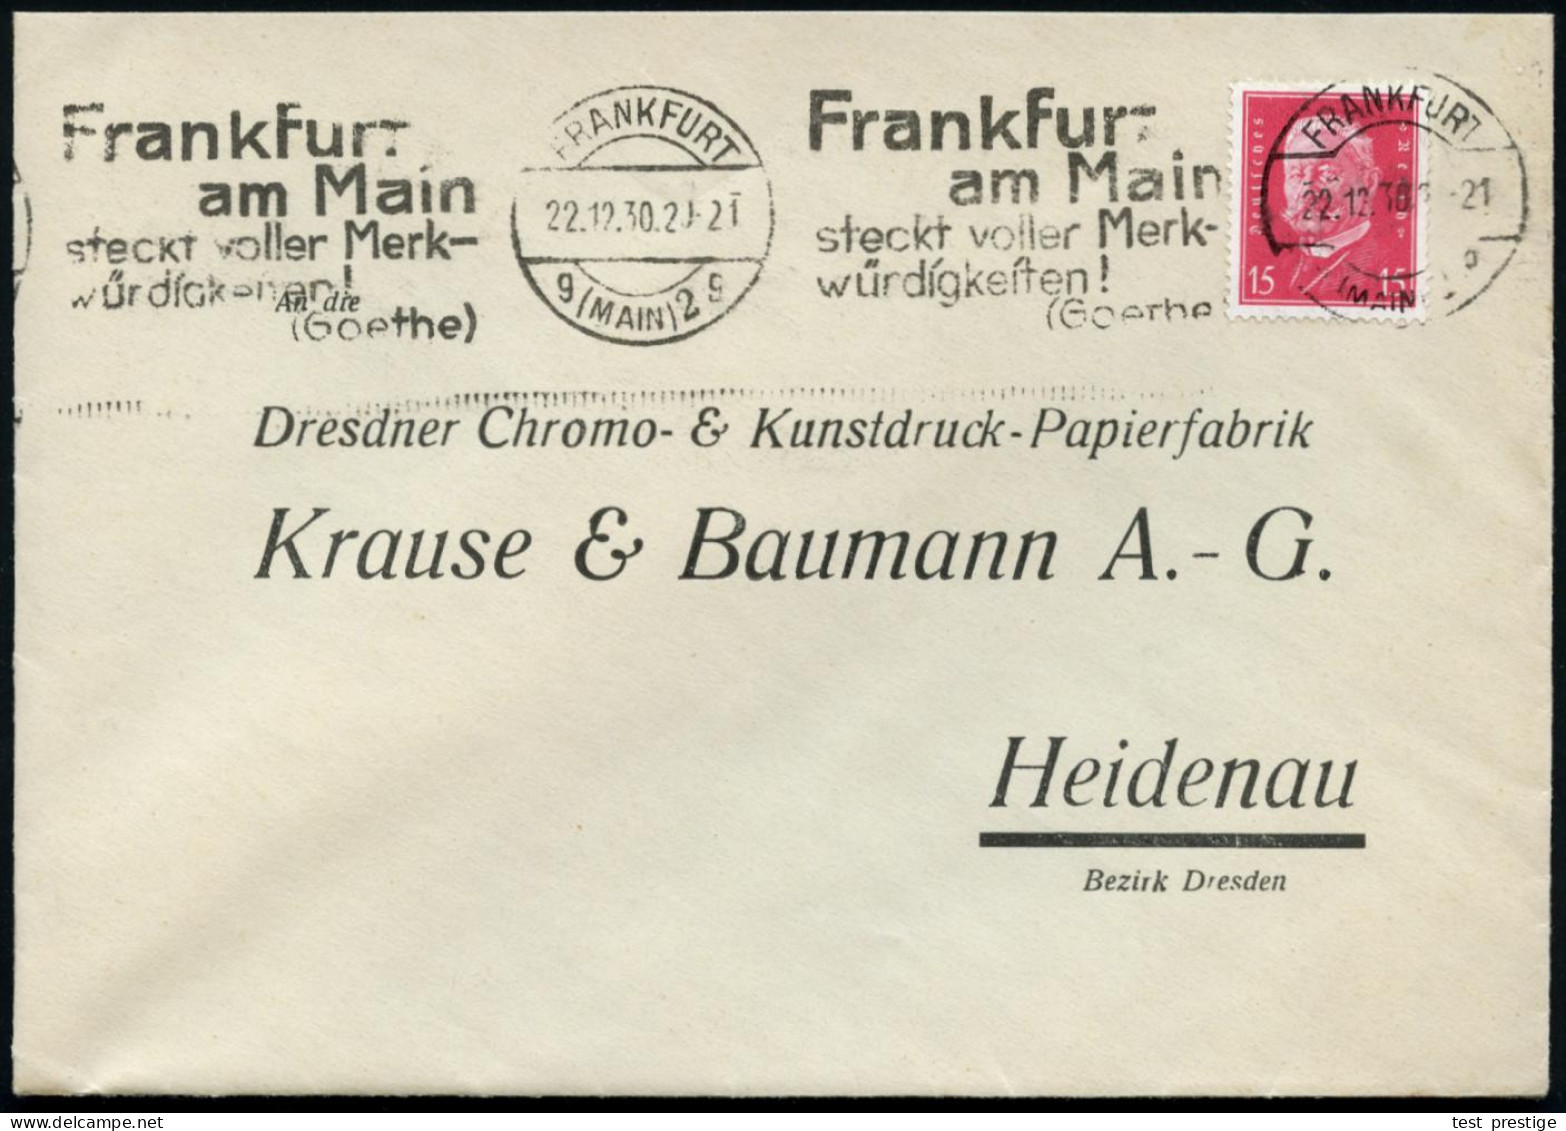 FRANKFURT/ G(MAIN)2/ G/ Frankfurt/ ..steckt Voller Merk-/ Würdigkeiten!/ (Goethe) 1931 (18.10.) Band-MWSt Klar Auf Firme - Writers